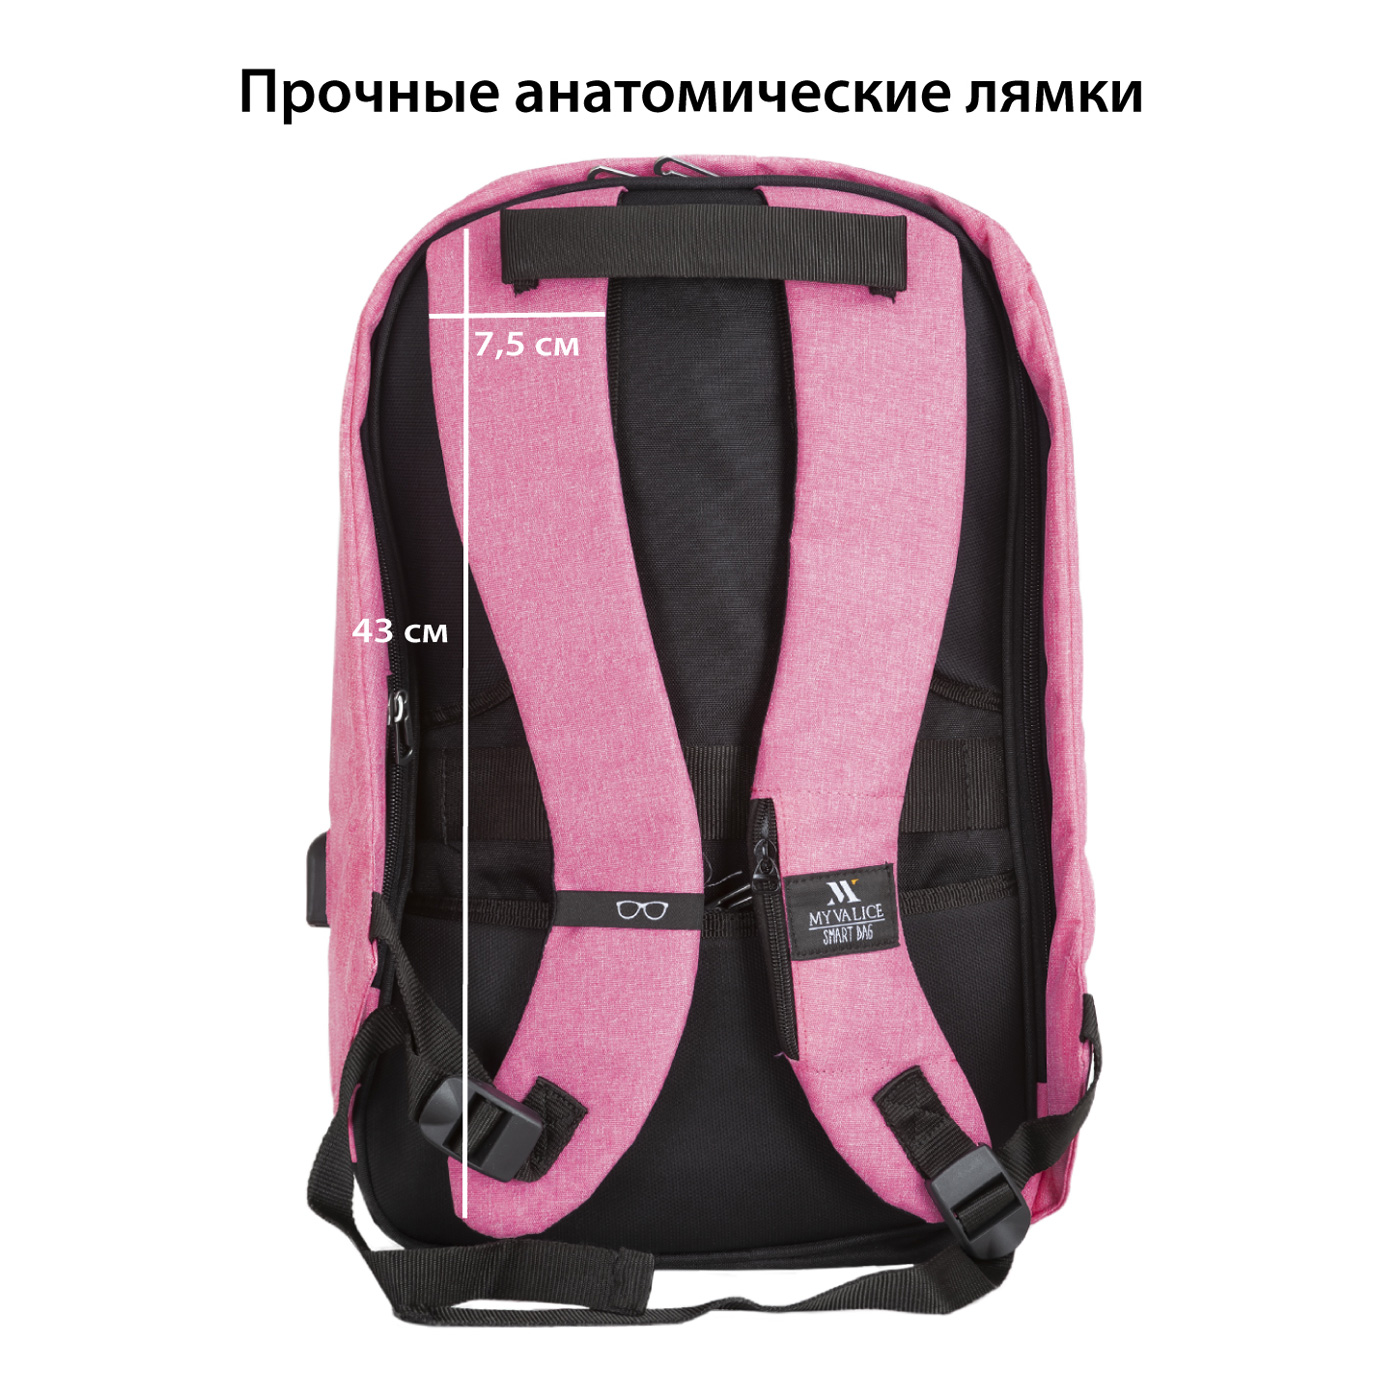 Картинка Рюкзак SUPRA STB-9002, Bluch Pink по разумной цене купить в интернет магазине mall.su